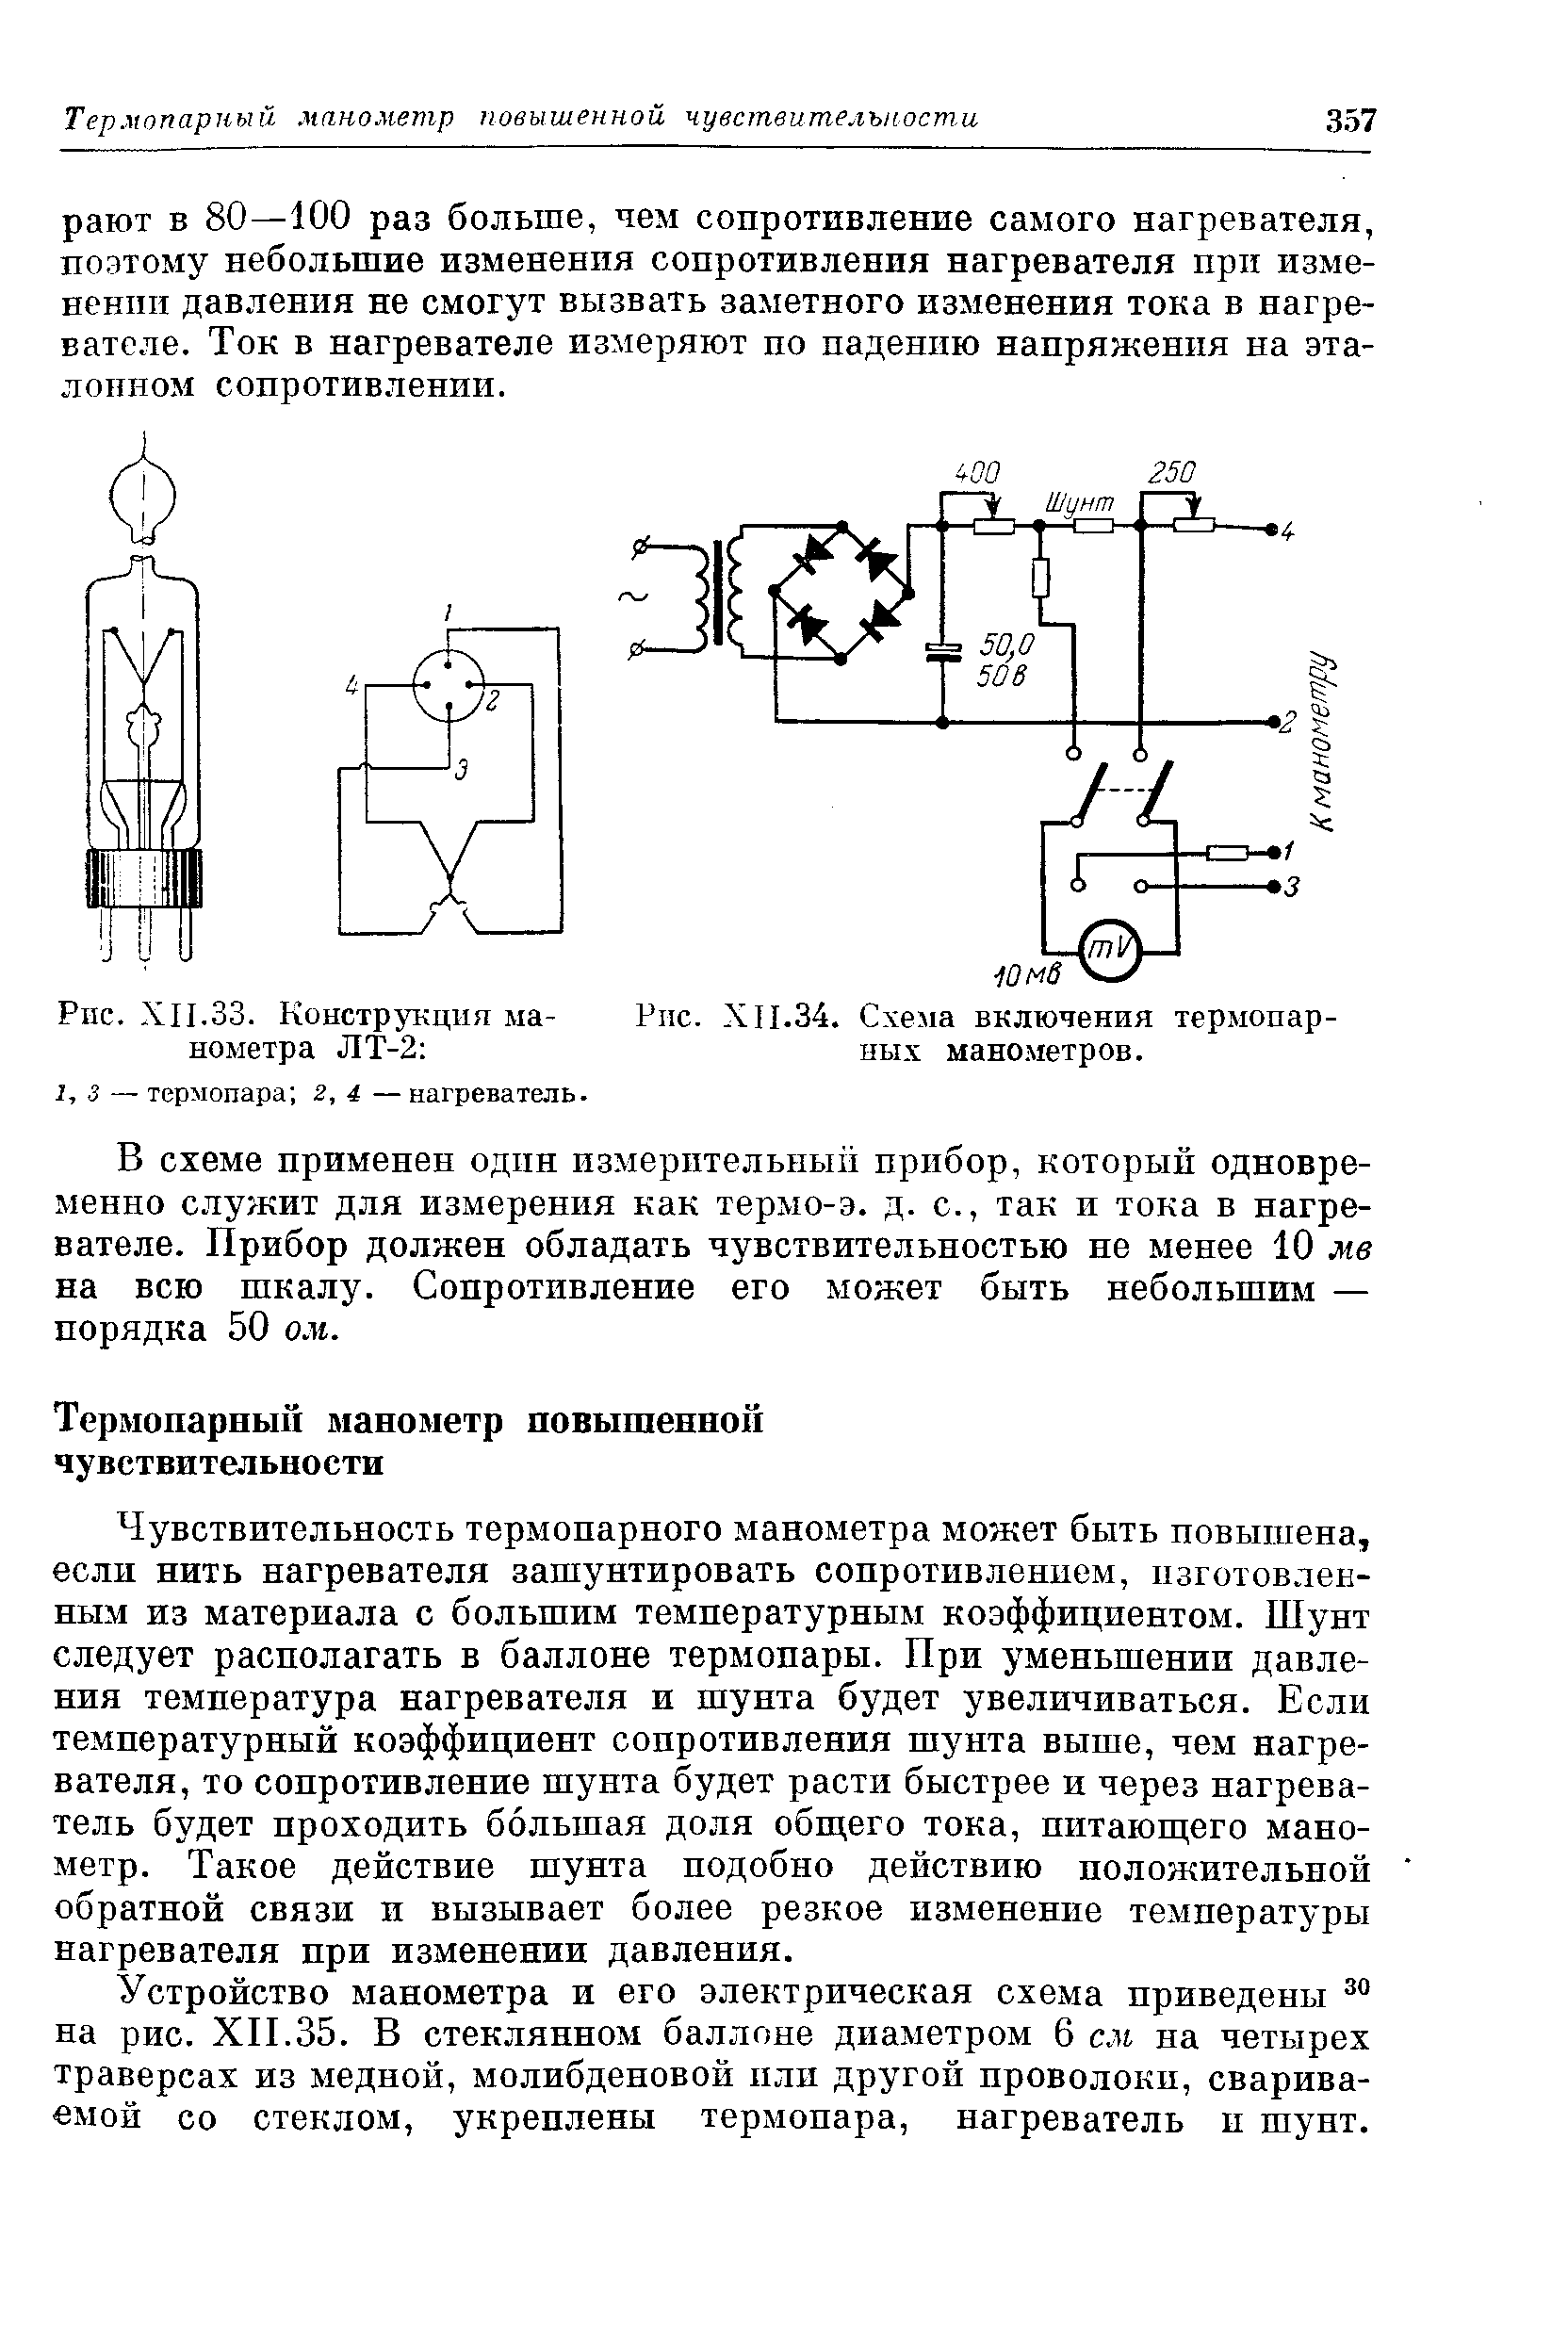 Схема включения термопарных манометров.